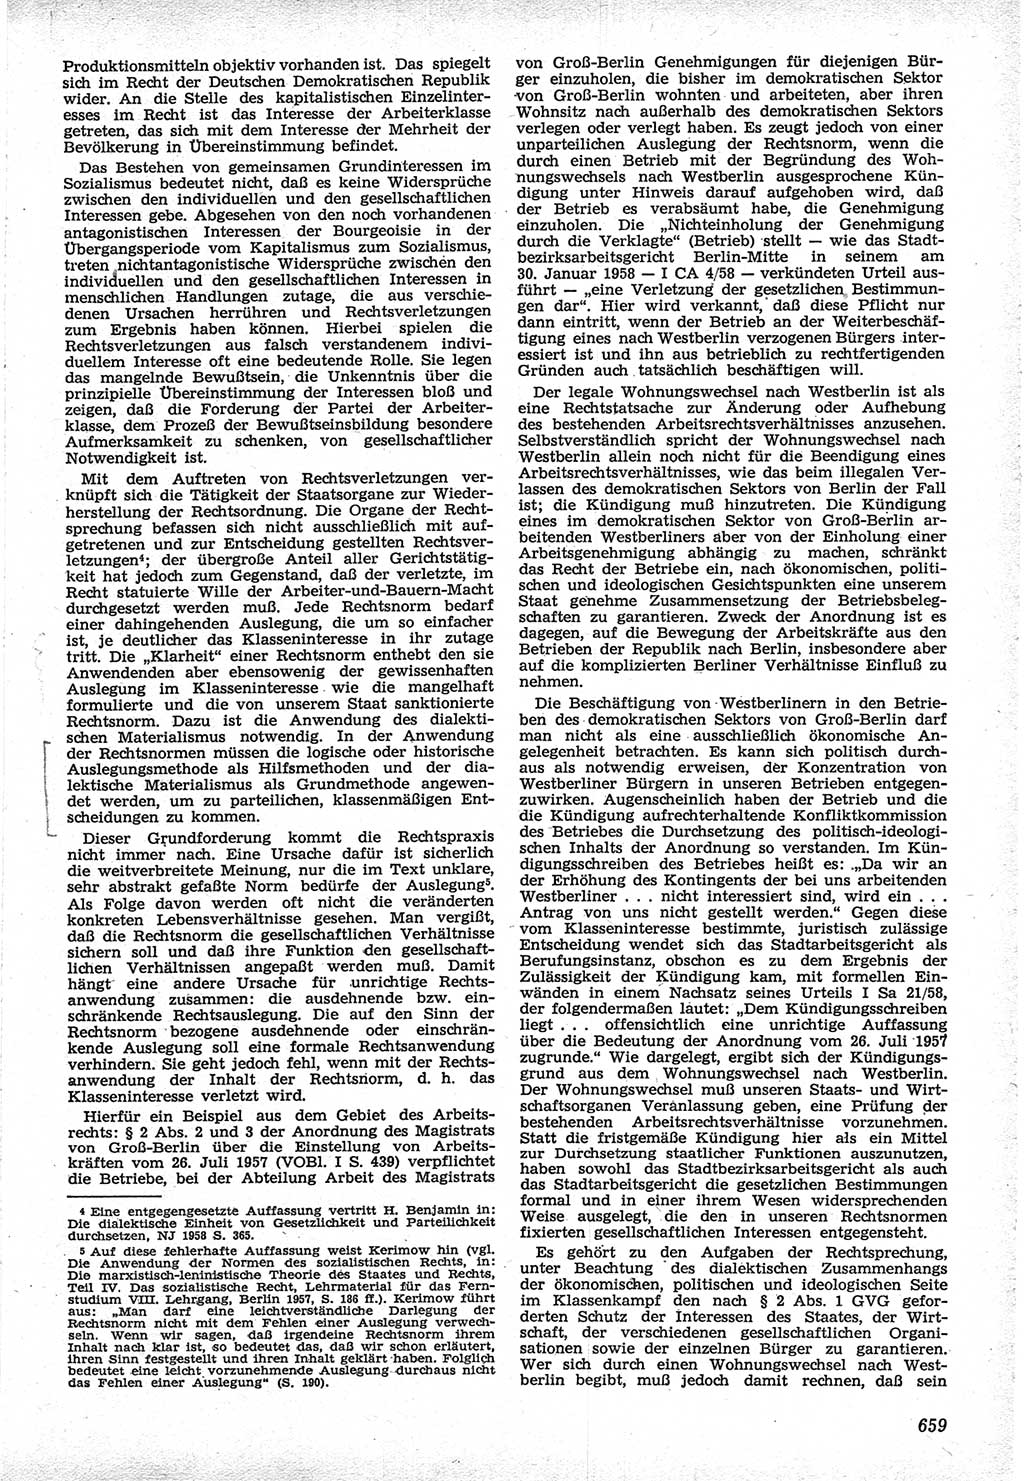 Neue Justiz (NJ), Zeitschrift für Recht und Rechtswissenschaft [Deutsche Demokratische Republik (DDR)], 12. Jahrgang 1958, Seite 659 (NJ DDR 1958, S. 659)